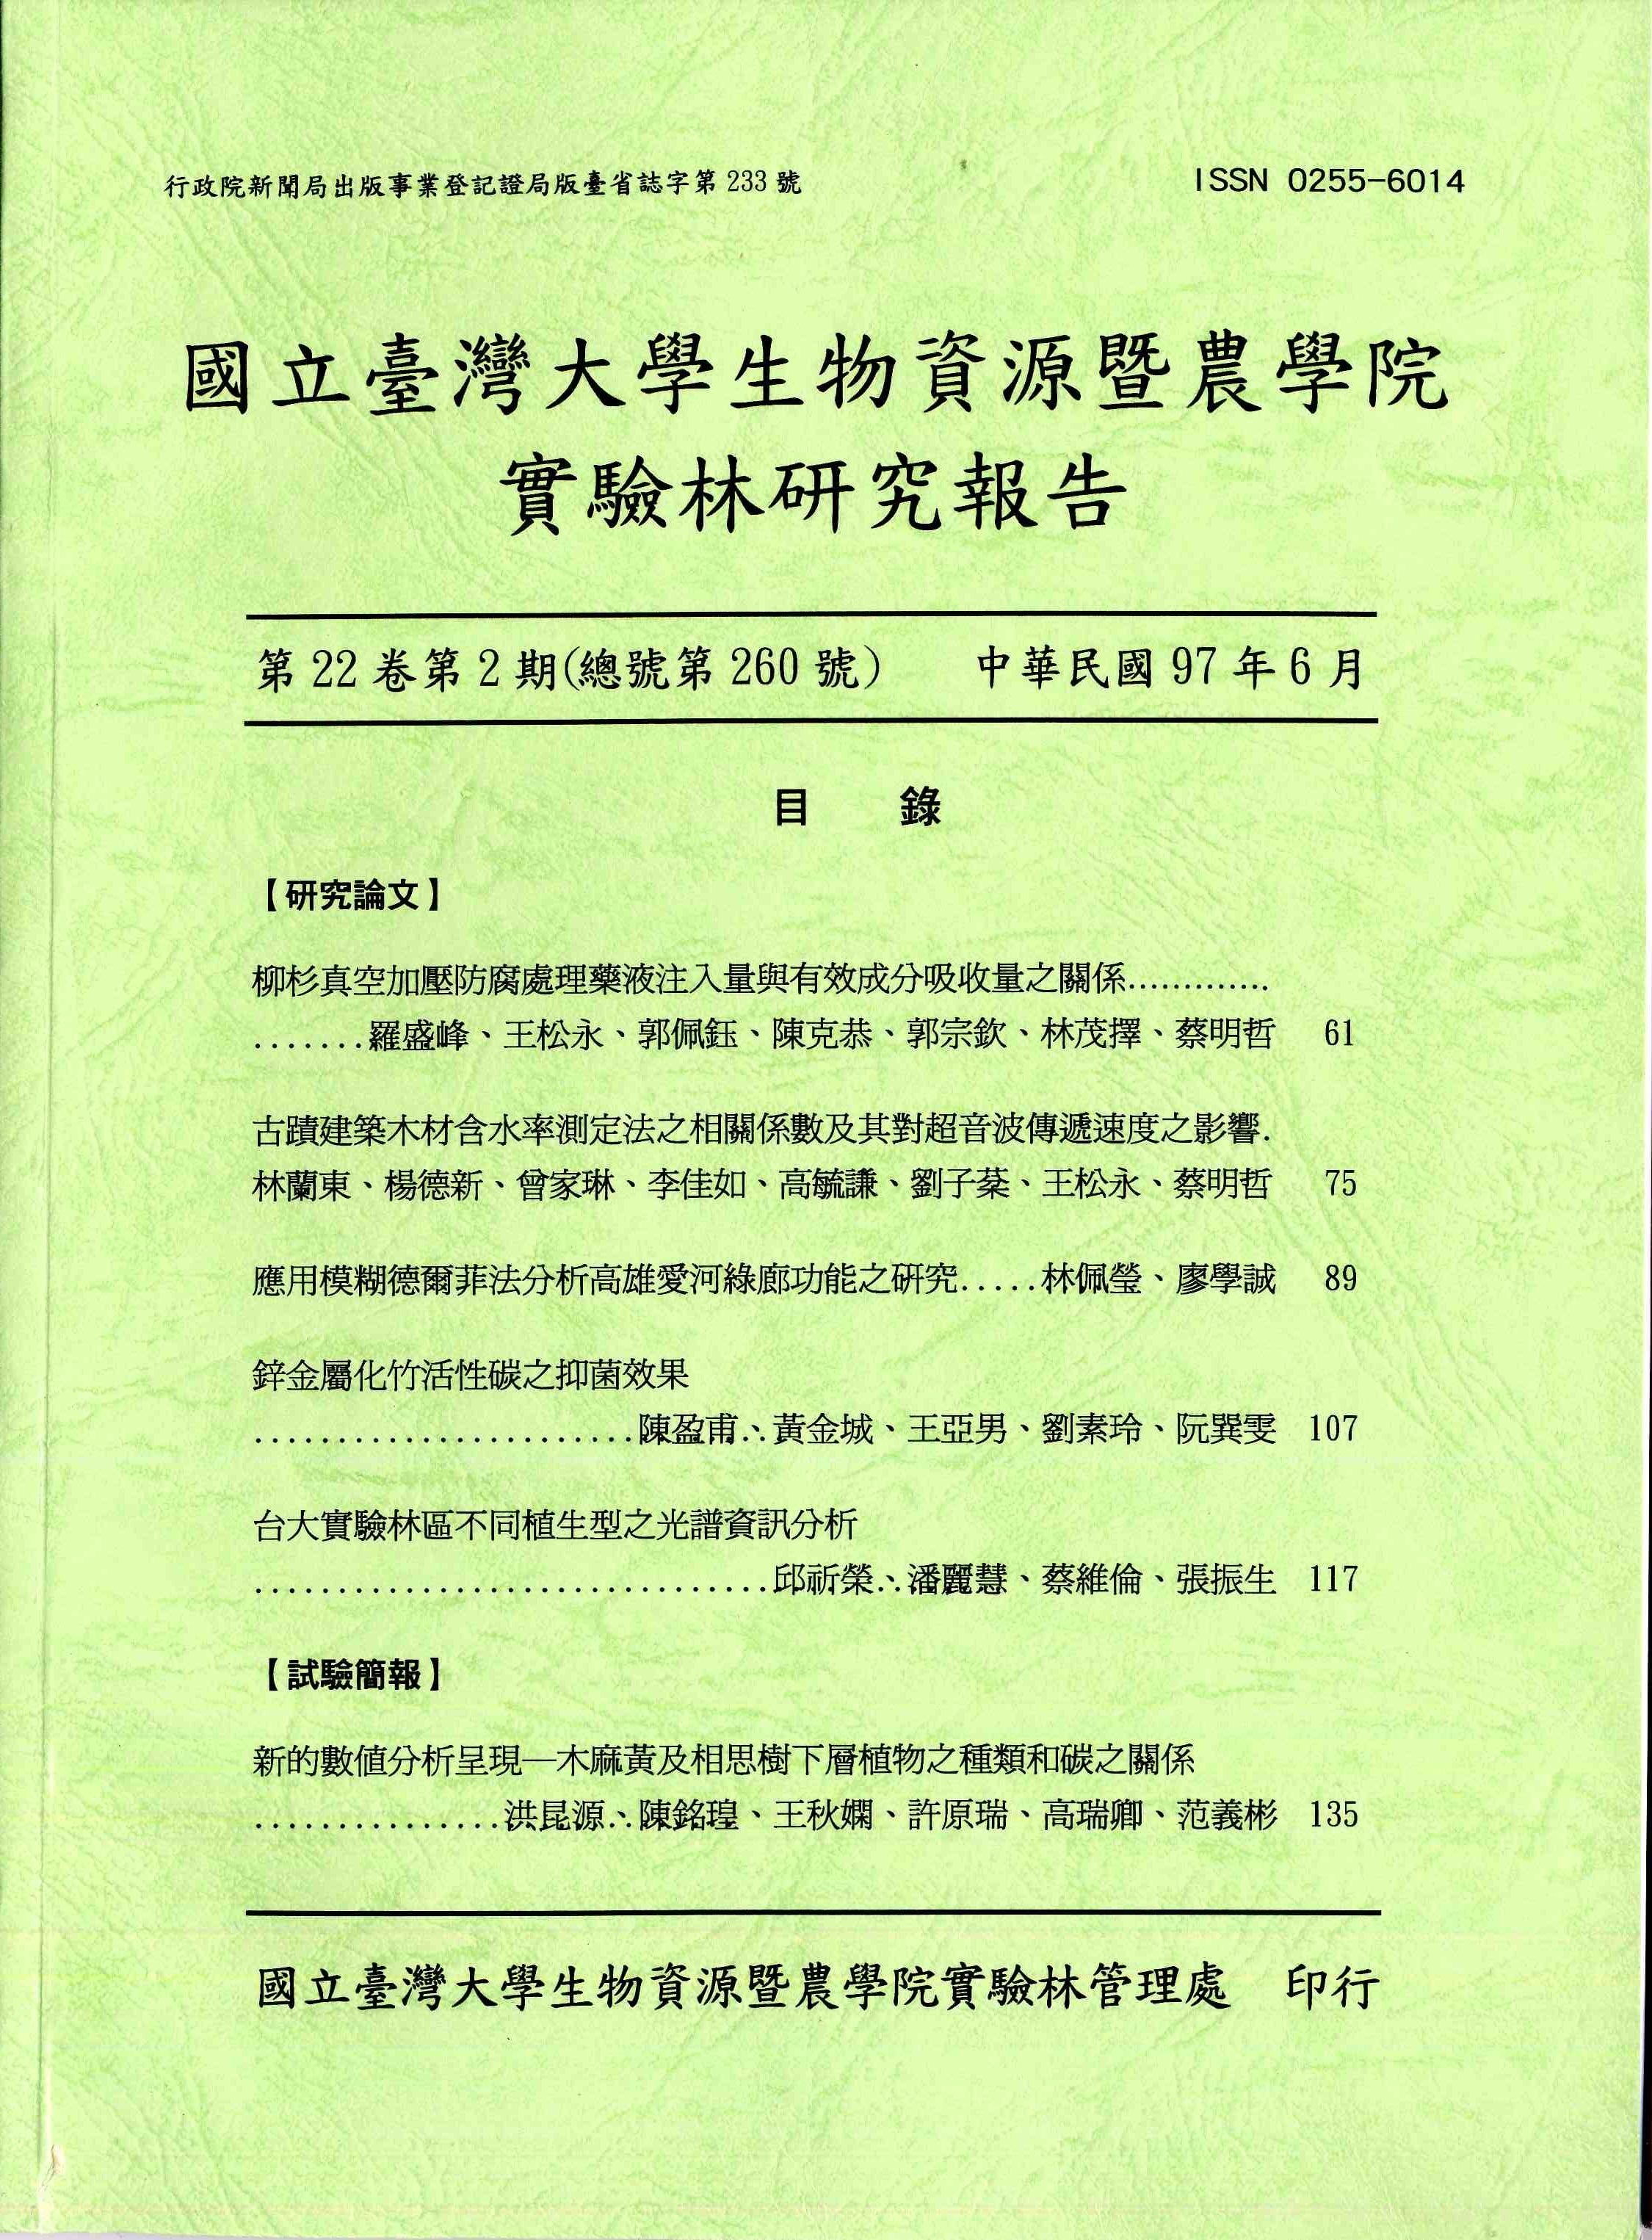 國立台灣大學農學院實驗林研究報告